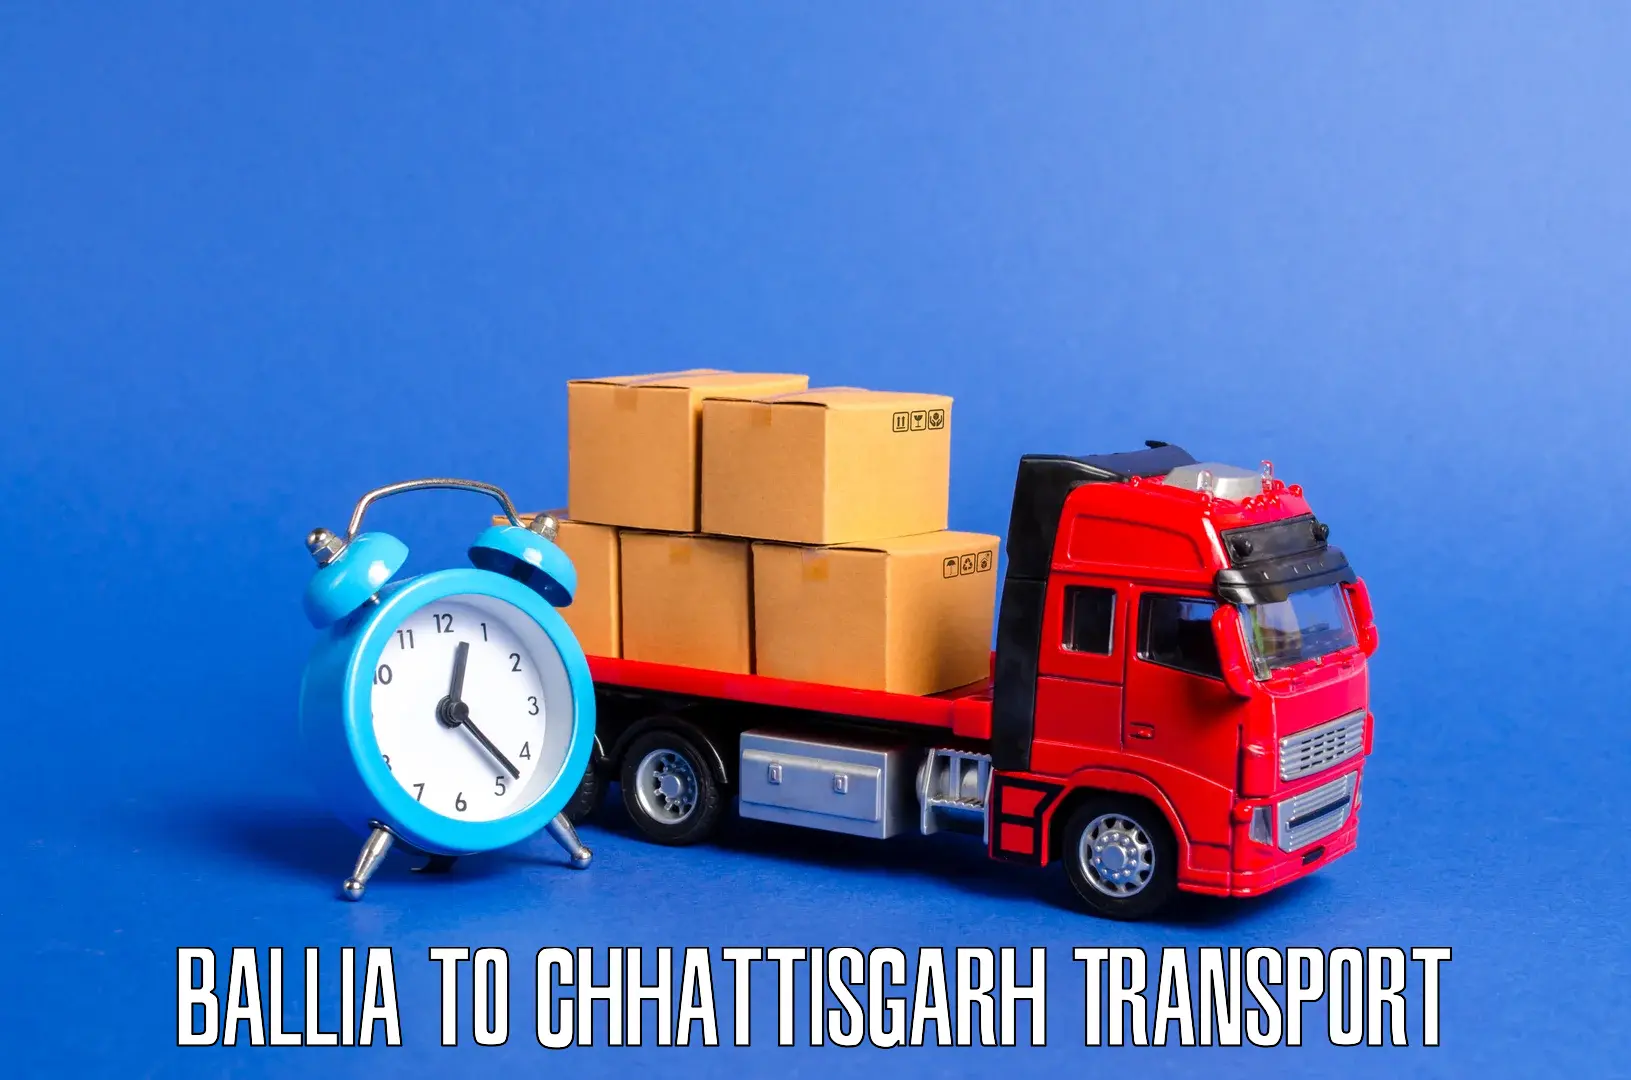 Delivery service Ballia to Chhattisgarh